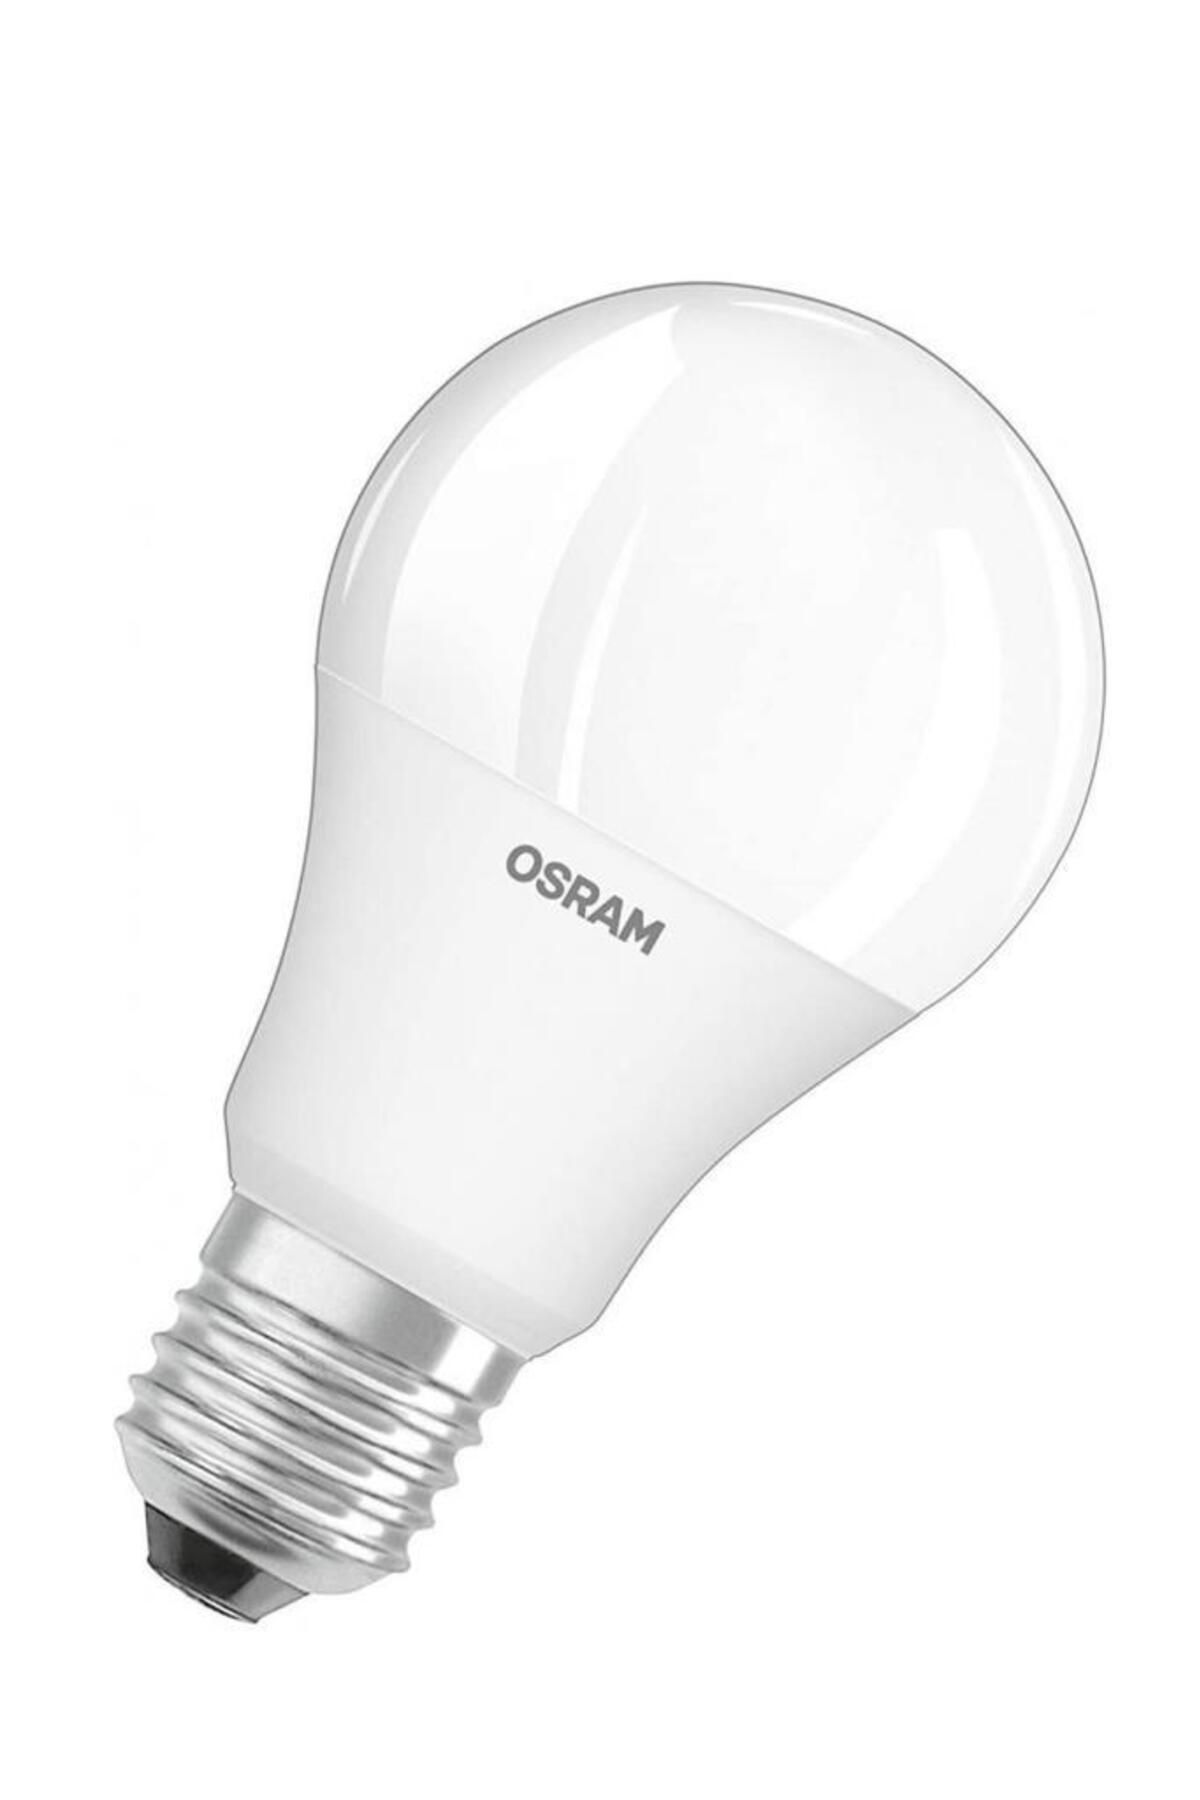 Osram 4,9W (40W) Mini Led Ampul 6500K Beyaz E27 Avize Lambası